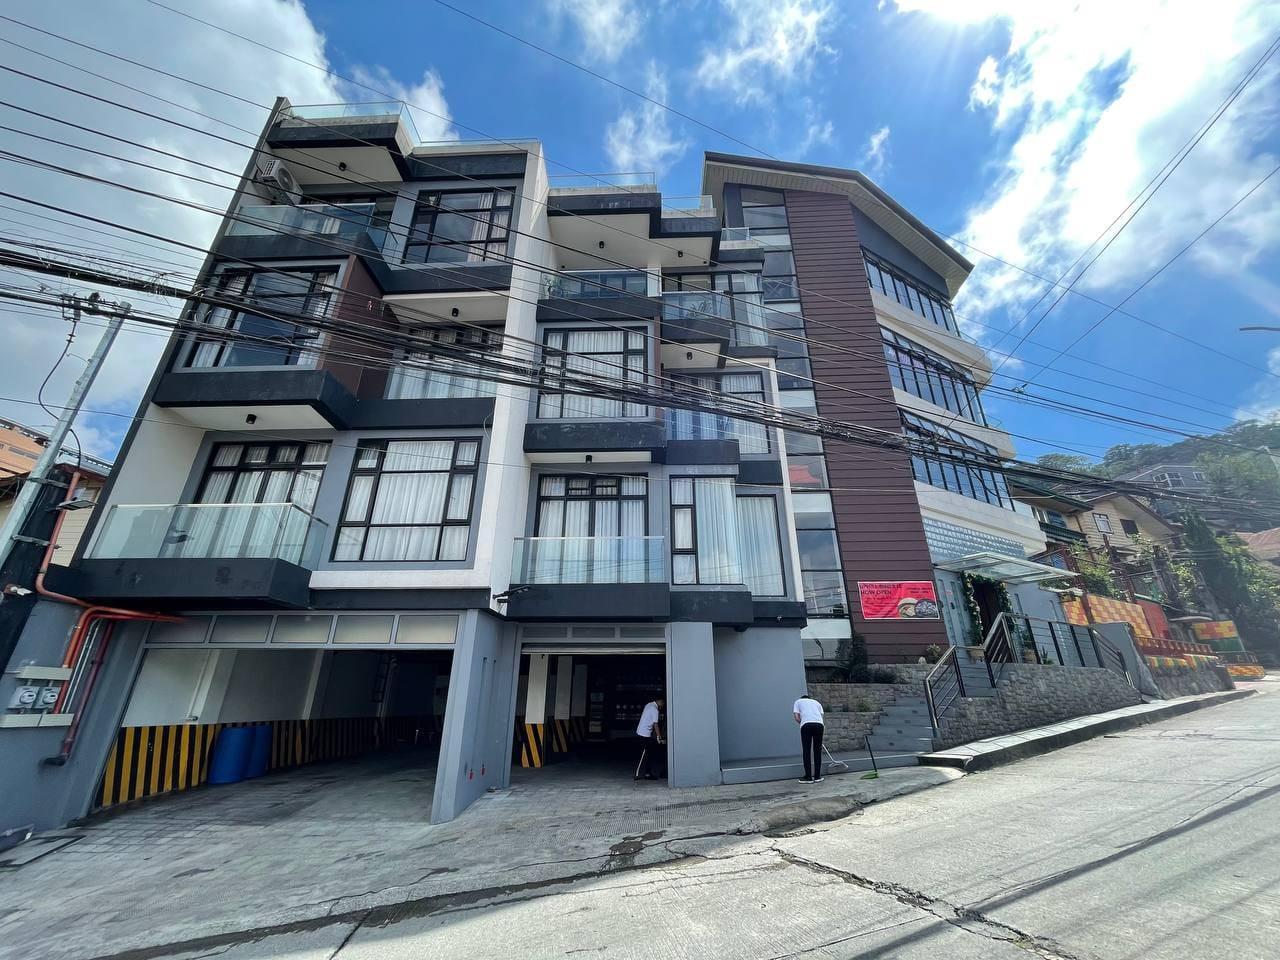 Uphill Hotel - Baguio - La Union